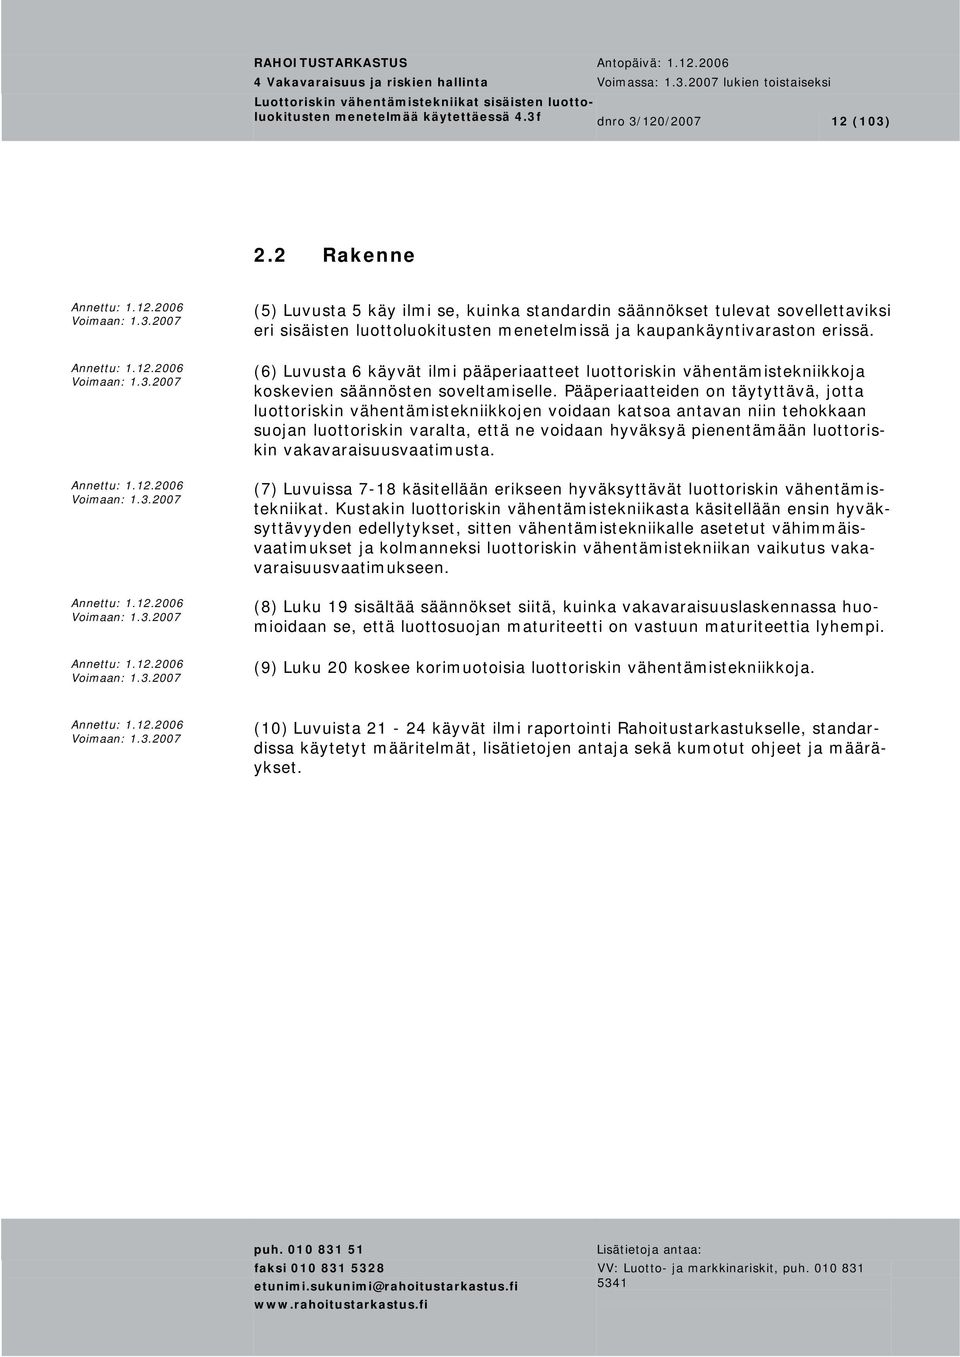 (6) Luvusta 6 käyvät ilmi pääperiaatteet luottoriskin vähentämistekniikkoja koskevien säännösten soveltamiselle.